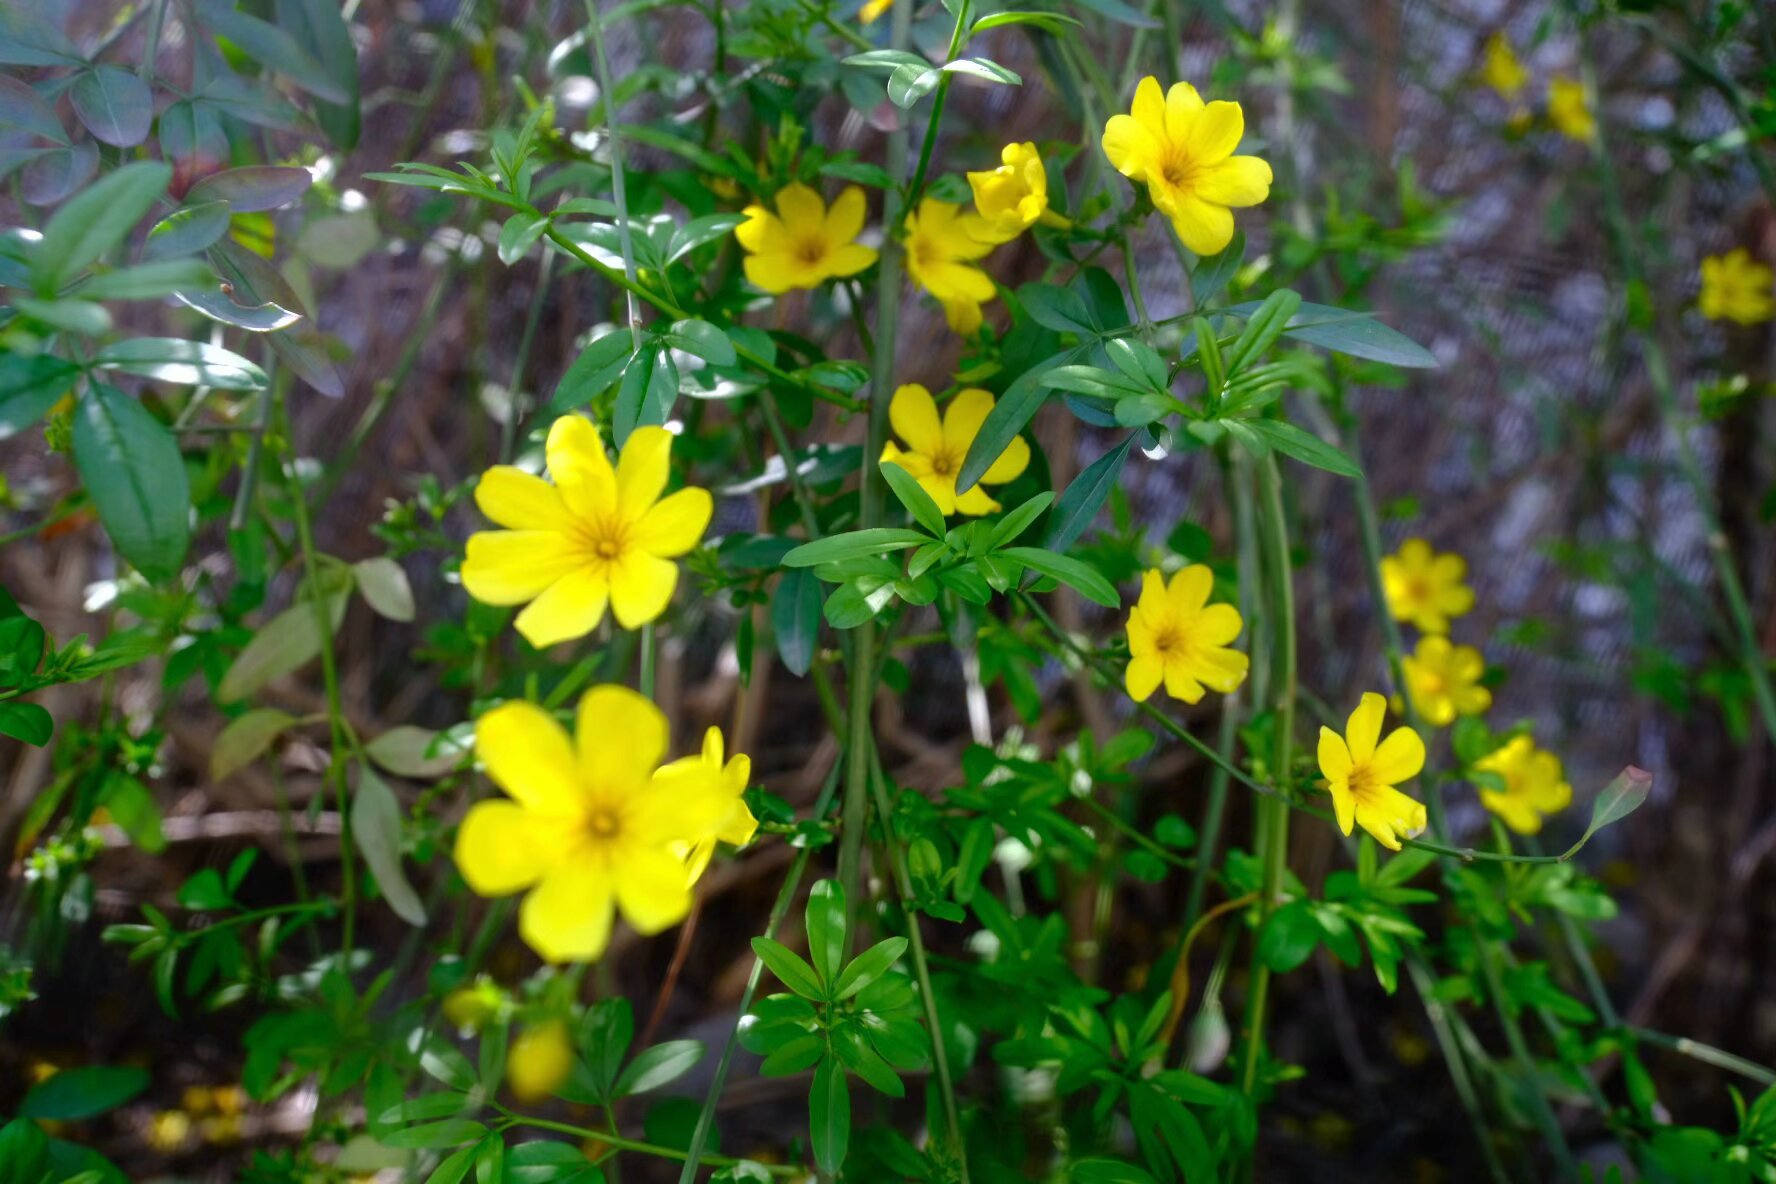 一朵朵黄色娇俏的迎春花从初春到暮春，整整一个春天都未曾缺席。（王建兴 摄）